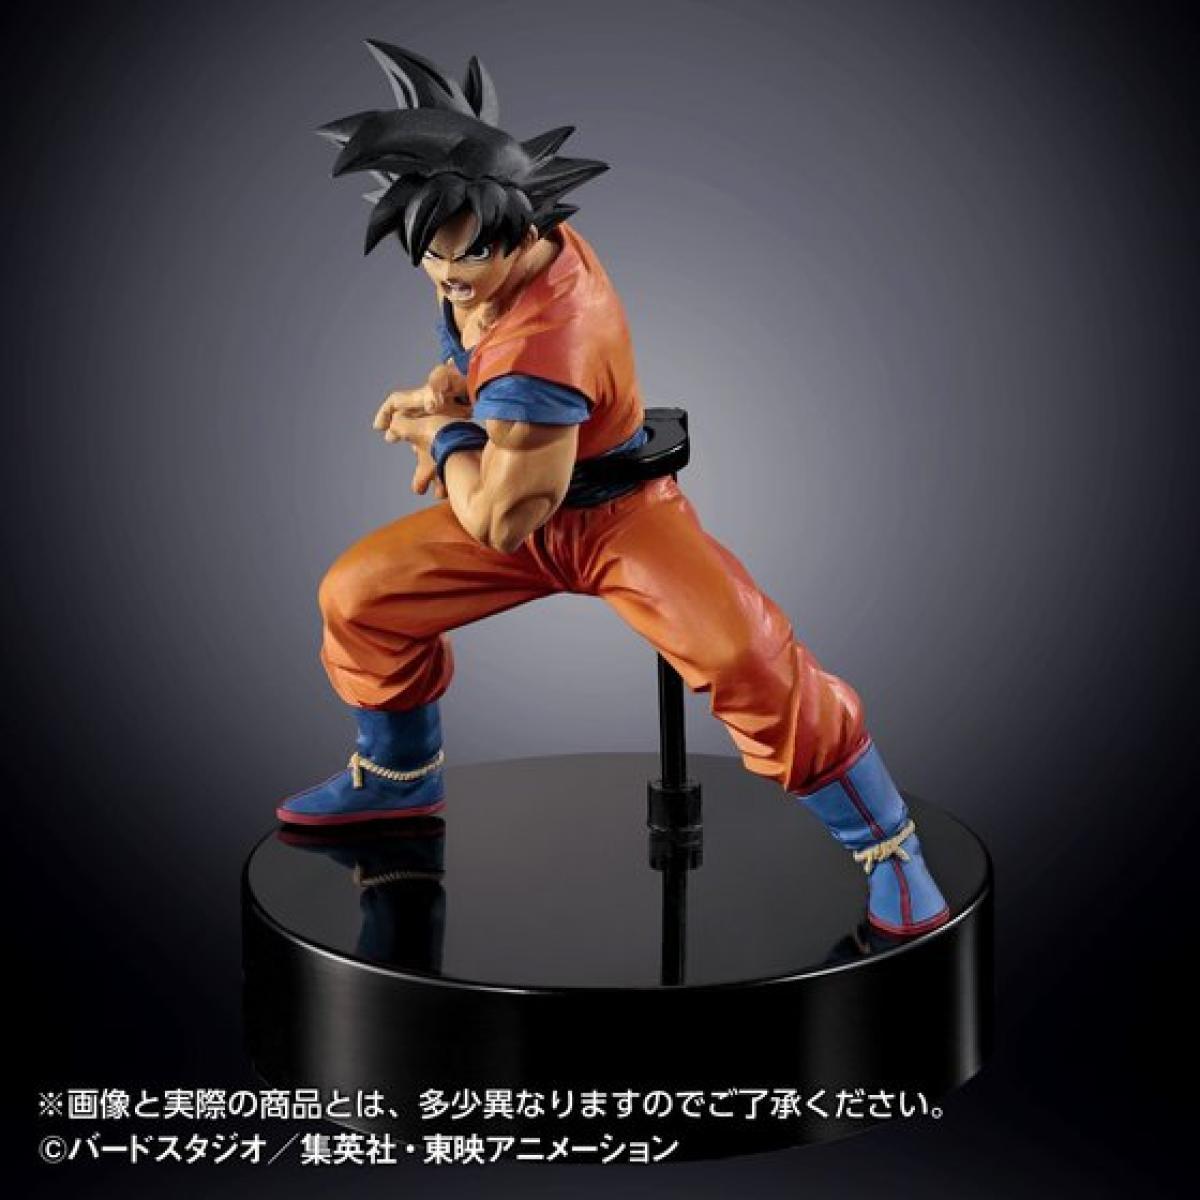 Dragon Ball - Figura de Goku lanzando un Kame Hame Ha LED | Hobbyconsolas